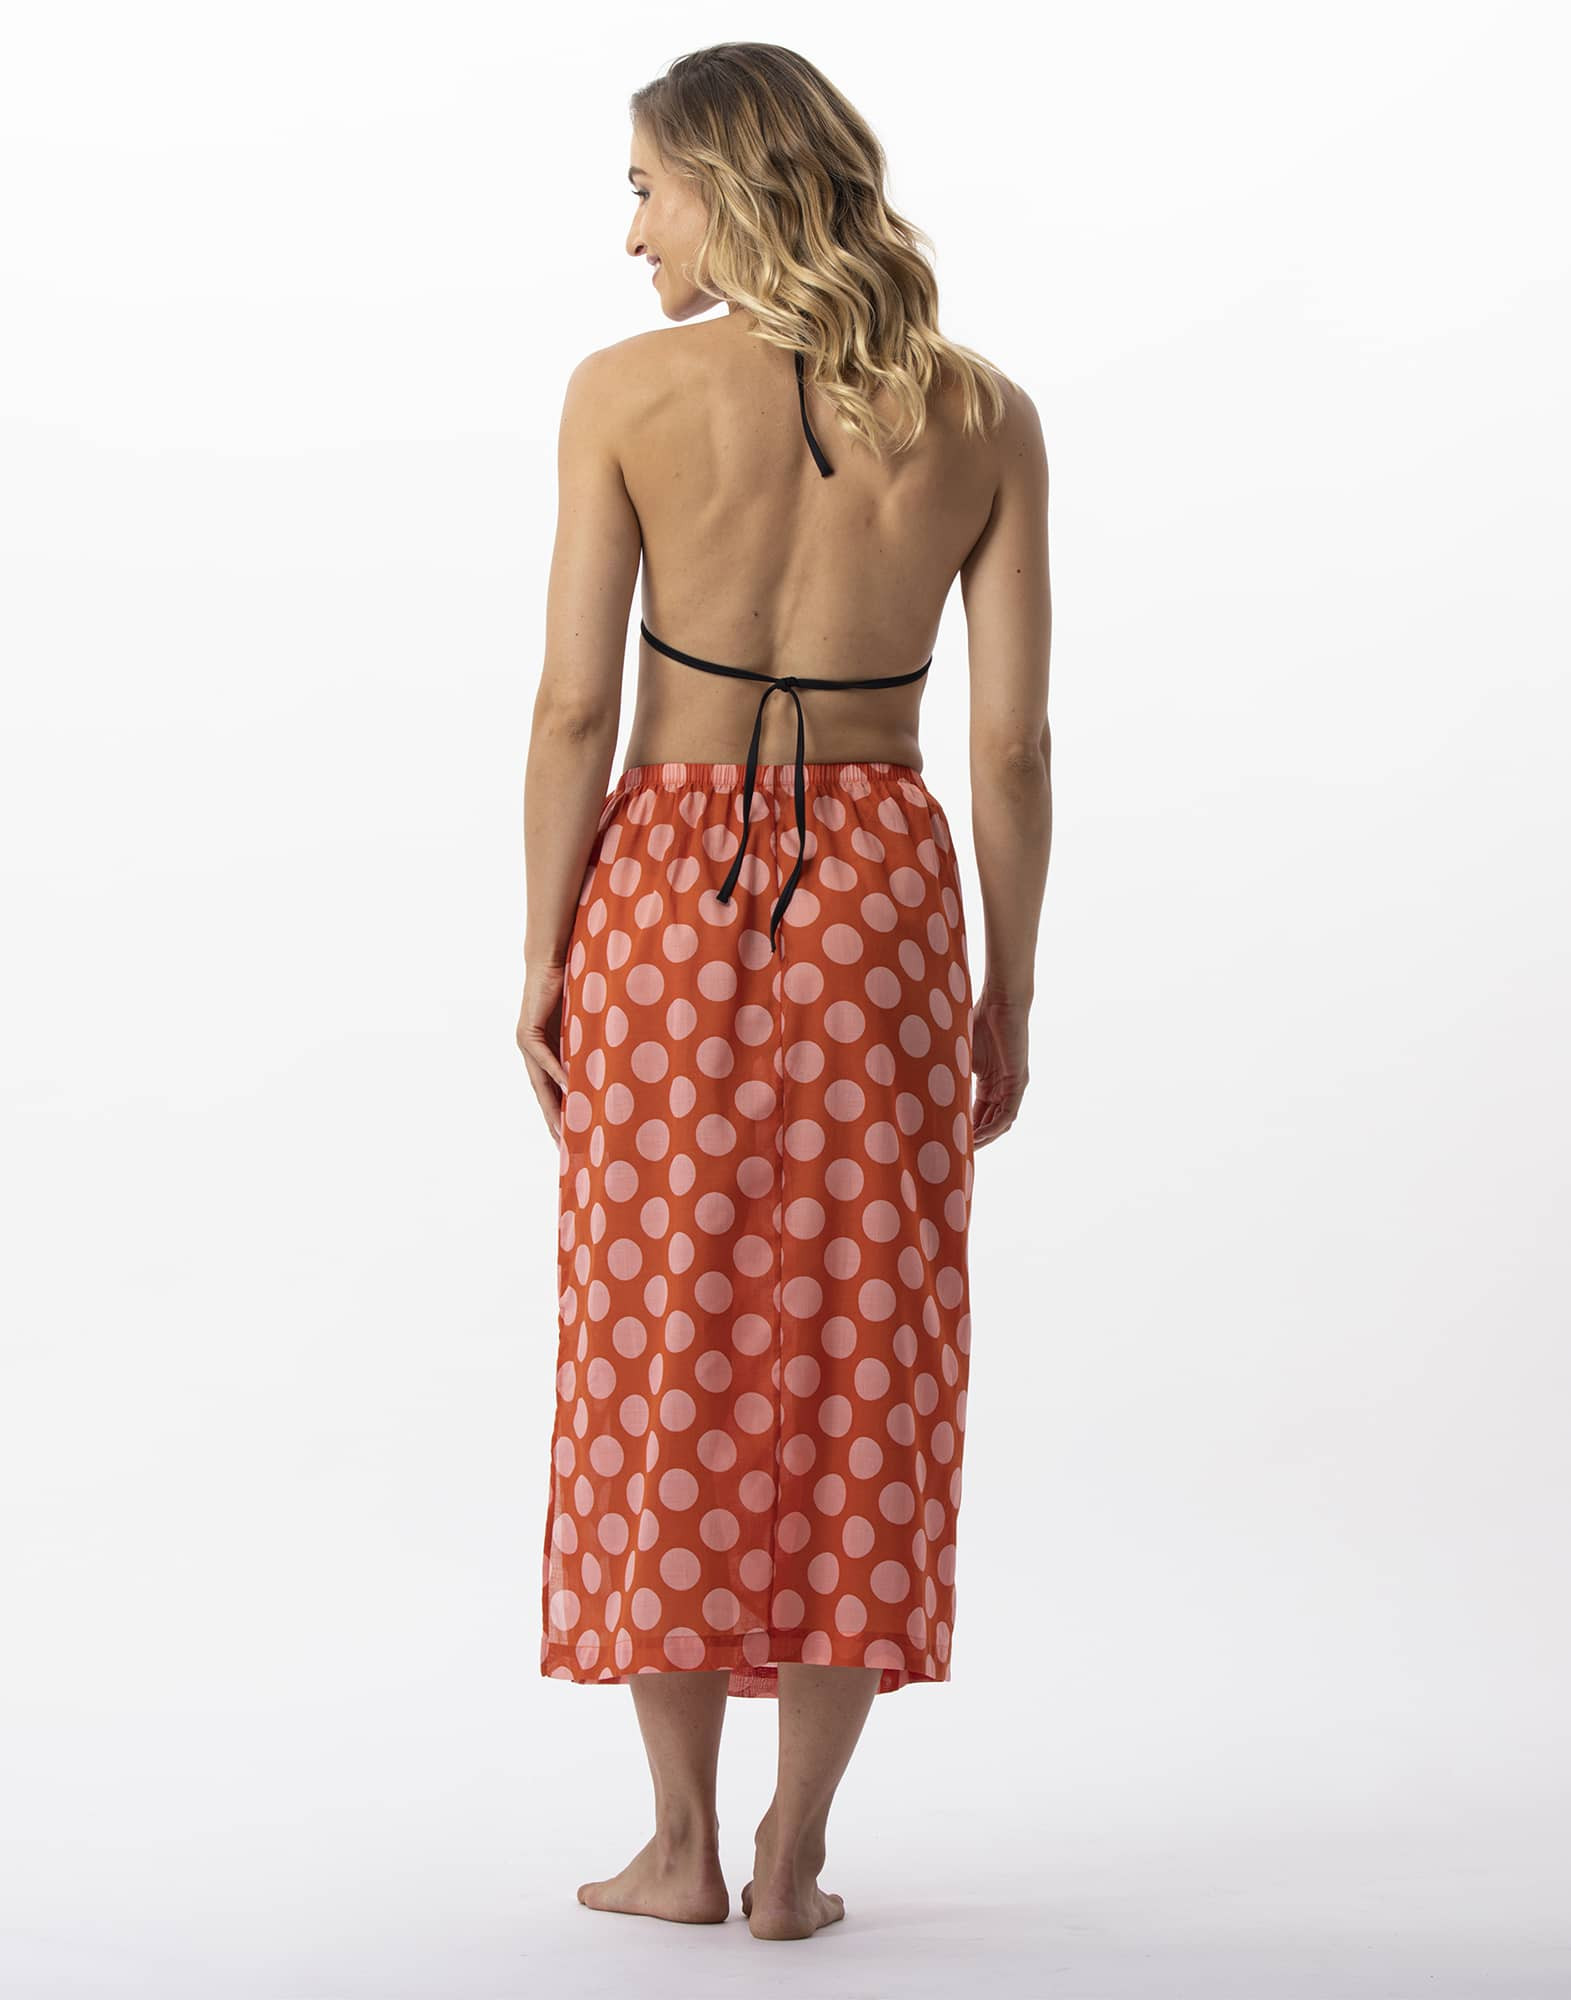 Polka dot printed sarong skirt in 100% cotton RIVA 780 pink